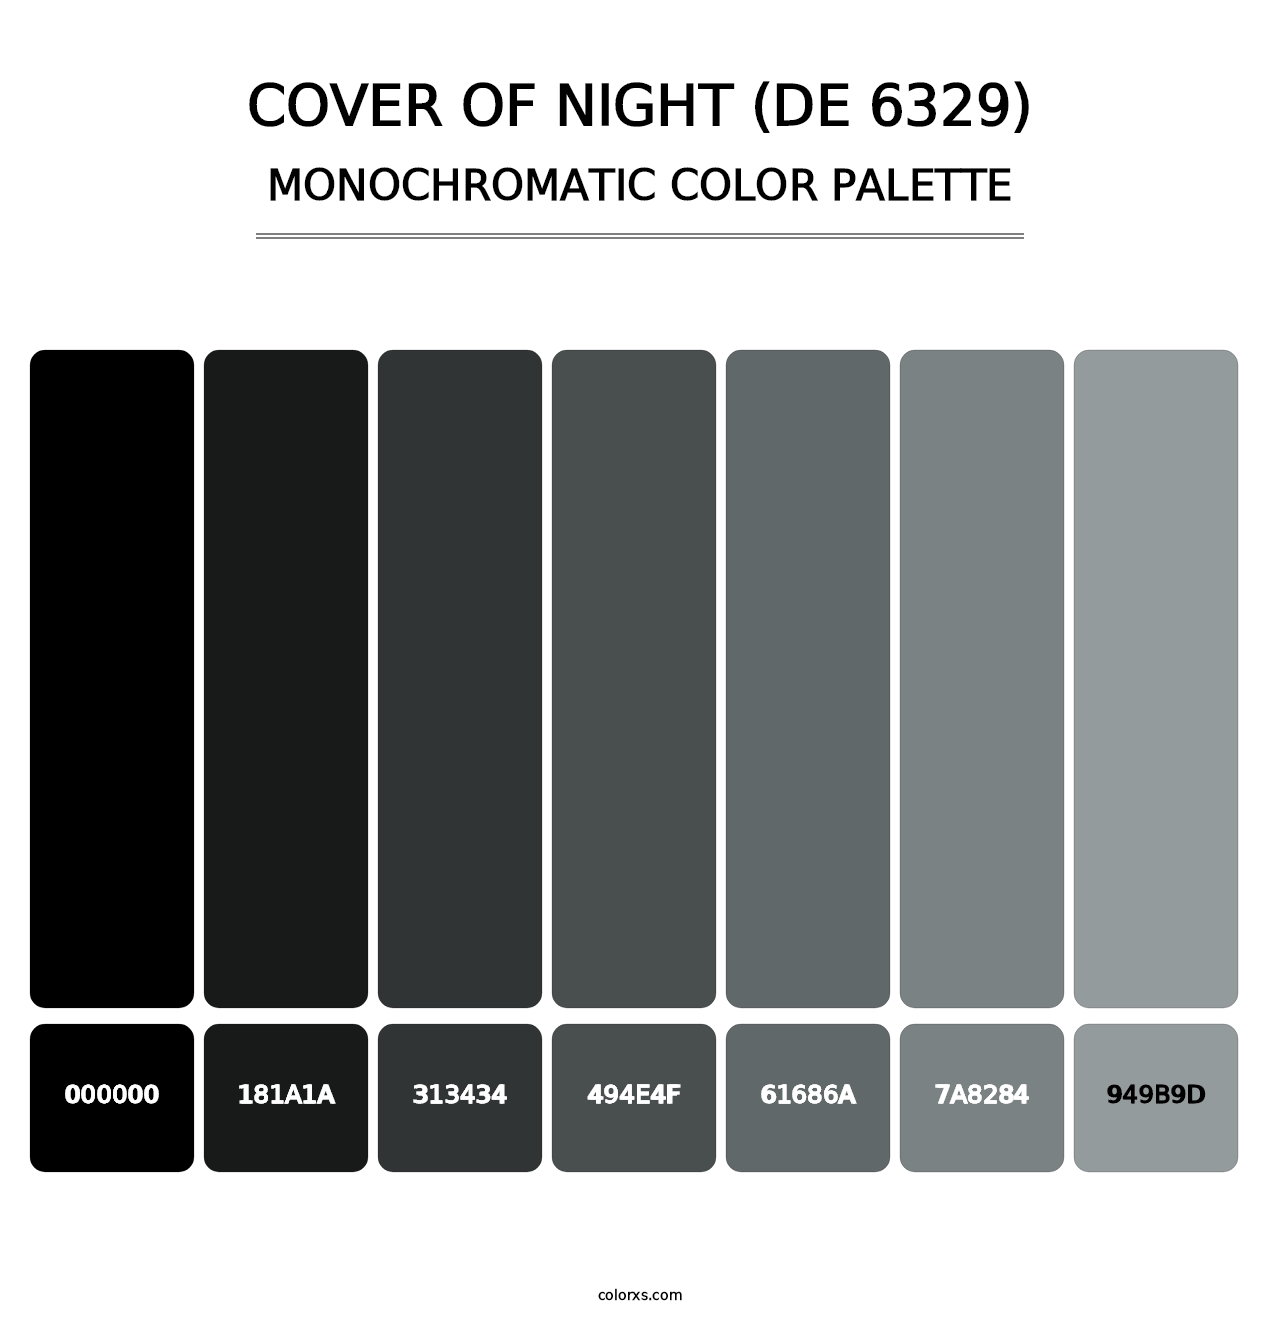 Cover of Night (DE 6329) - Monochromatic Color Palette